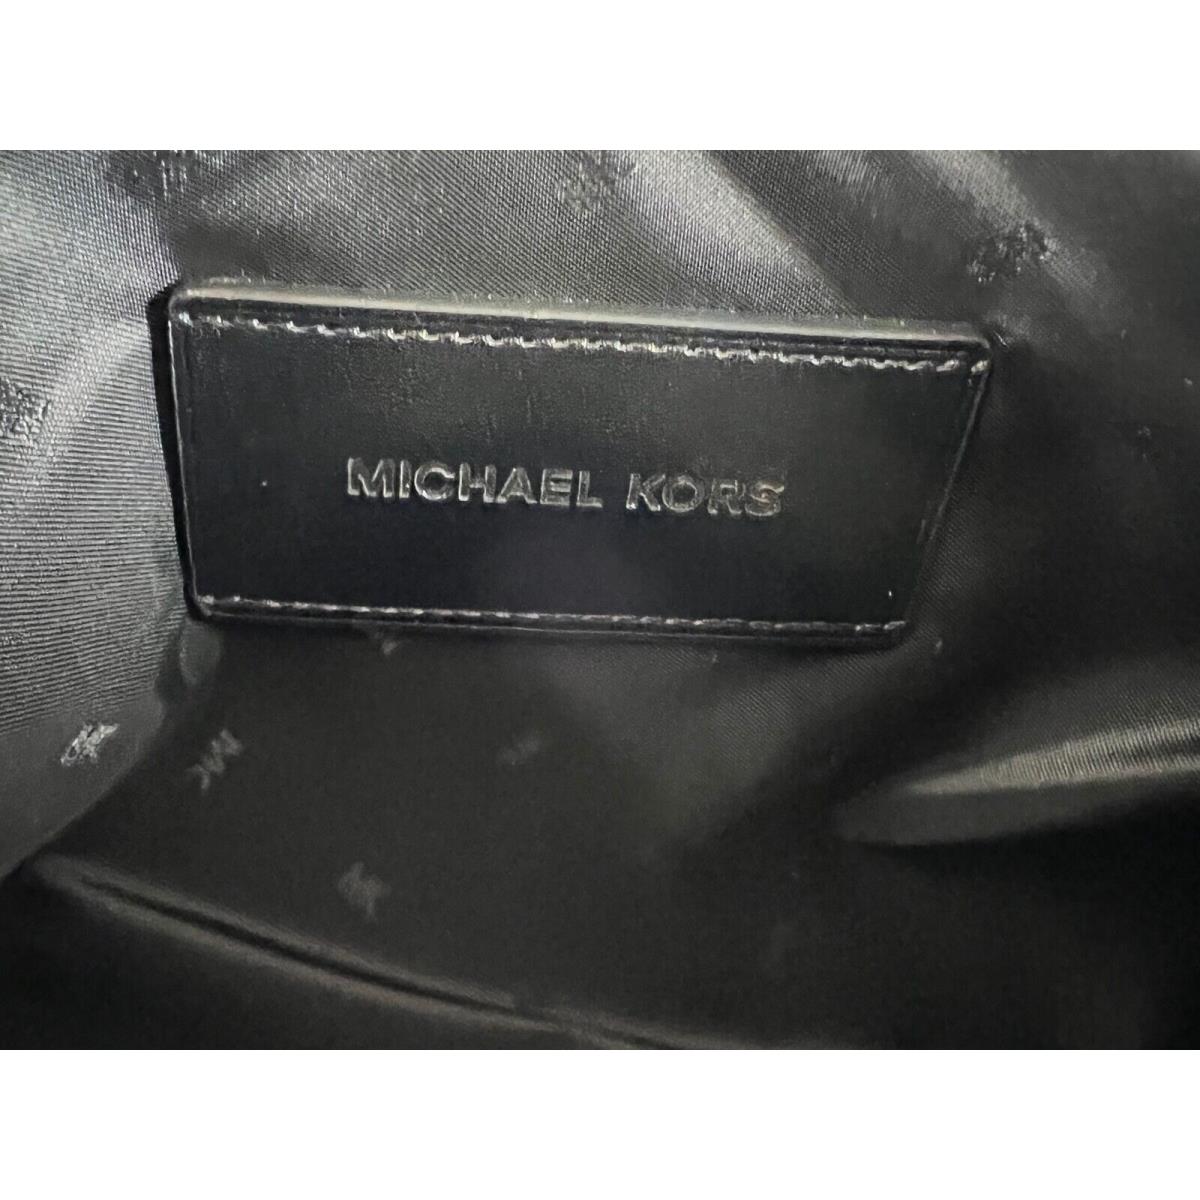 Michael Kors wallet  - Black , Brown